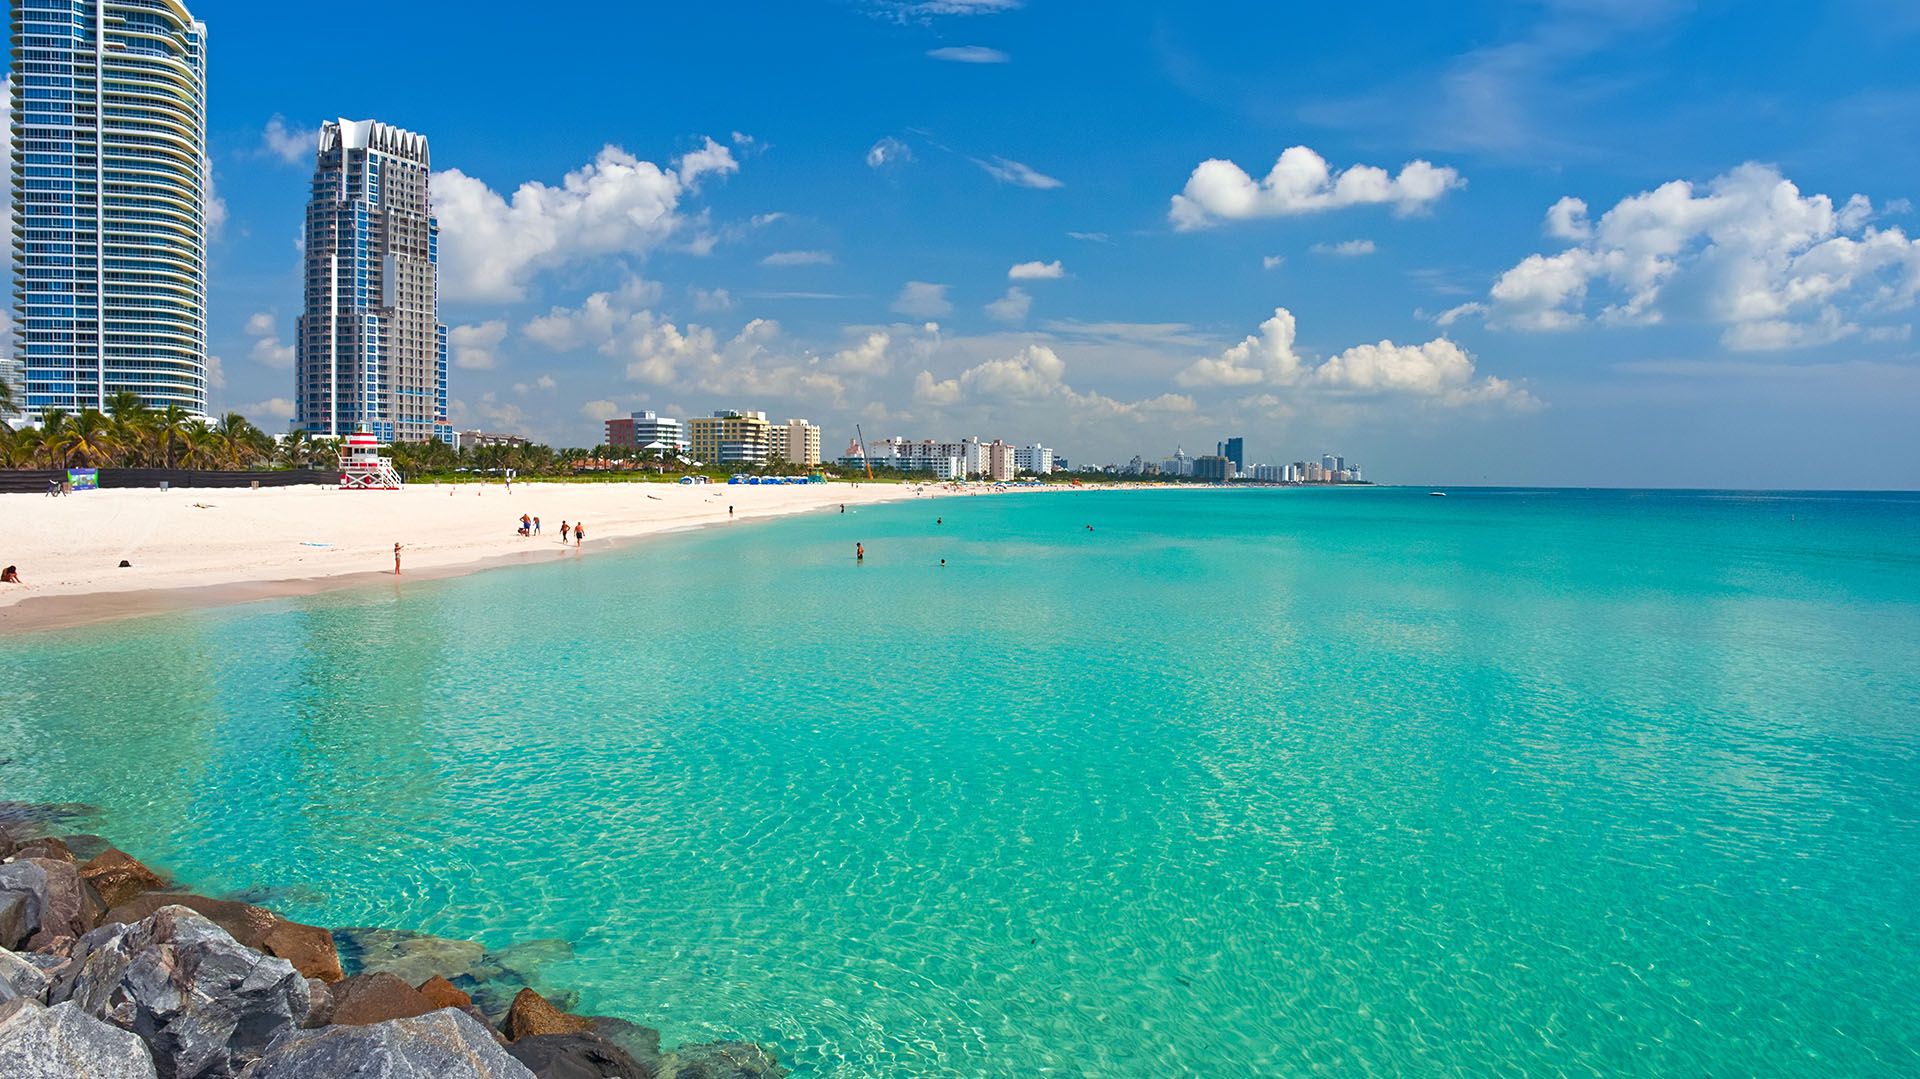 Miami Beach
(Shutterstock)